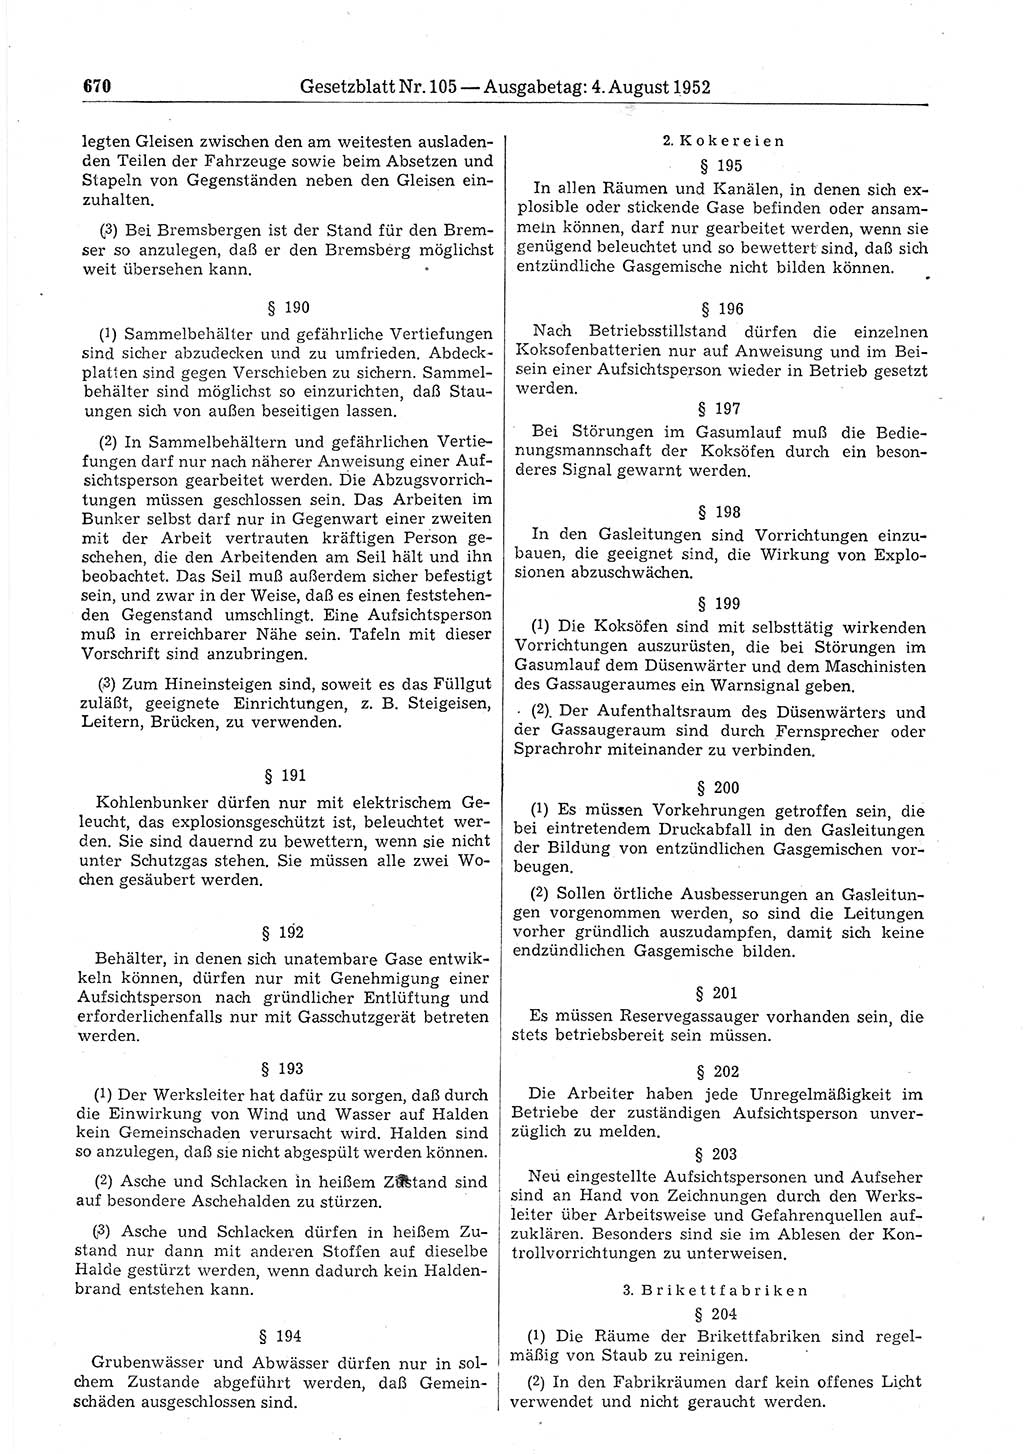 Gesetzblatt (GBl.) der Deutschen Demokratischen Republik (DDR) 1952, Seite 670 (GBl. DDR 1952, S. 670)